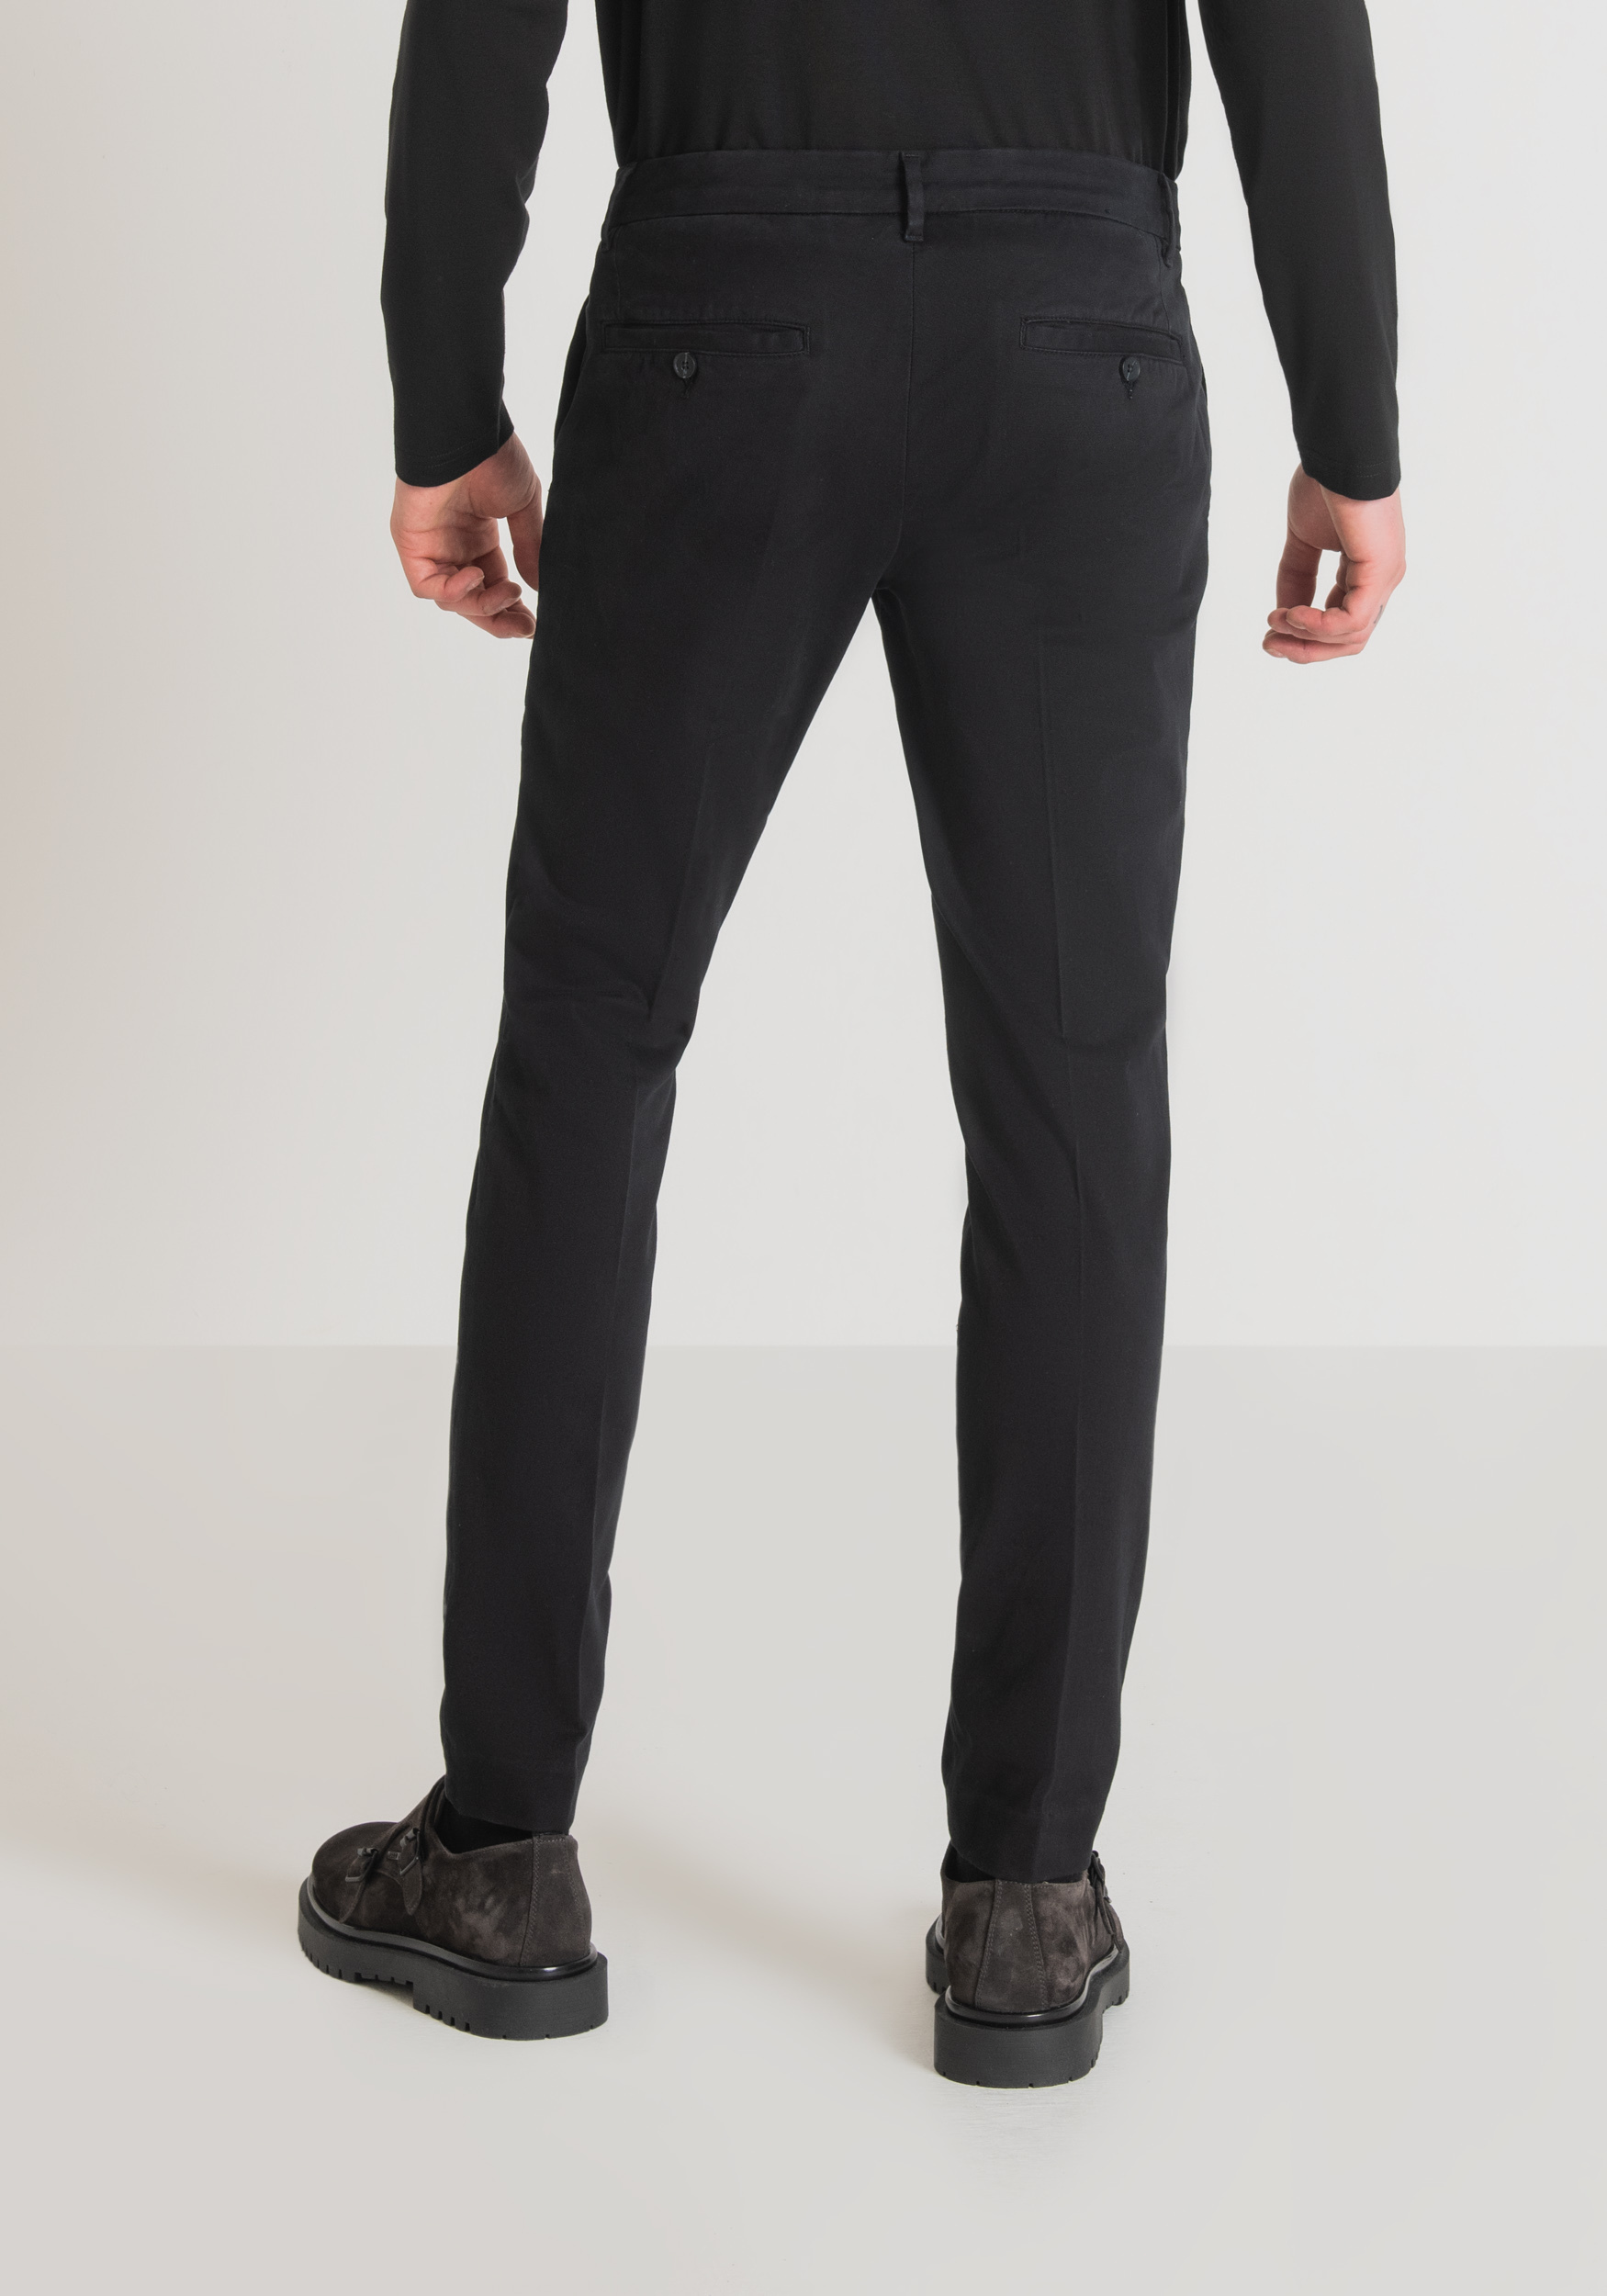 Antony Morato Pantalon Skinny Fit Bryan En Coton Doux Elastique Micro-Armure Noir | Homme Pantalons